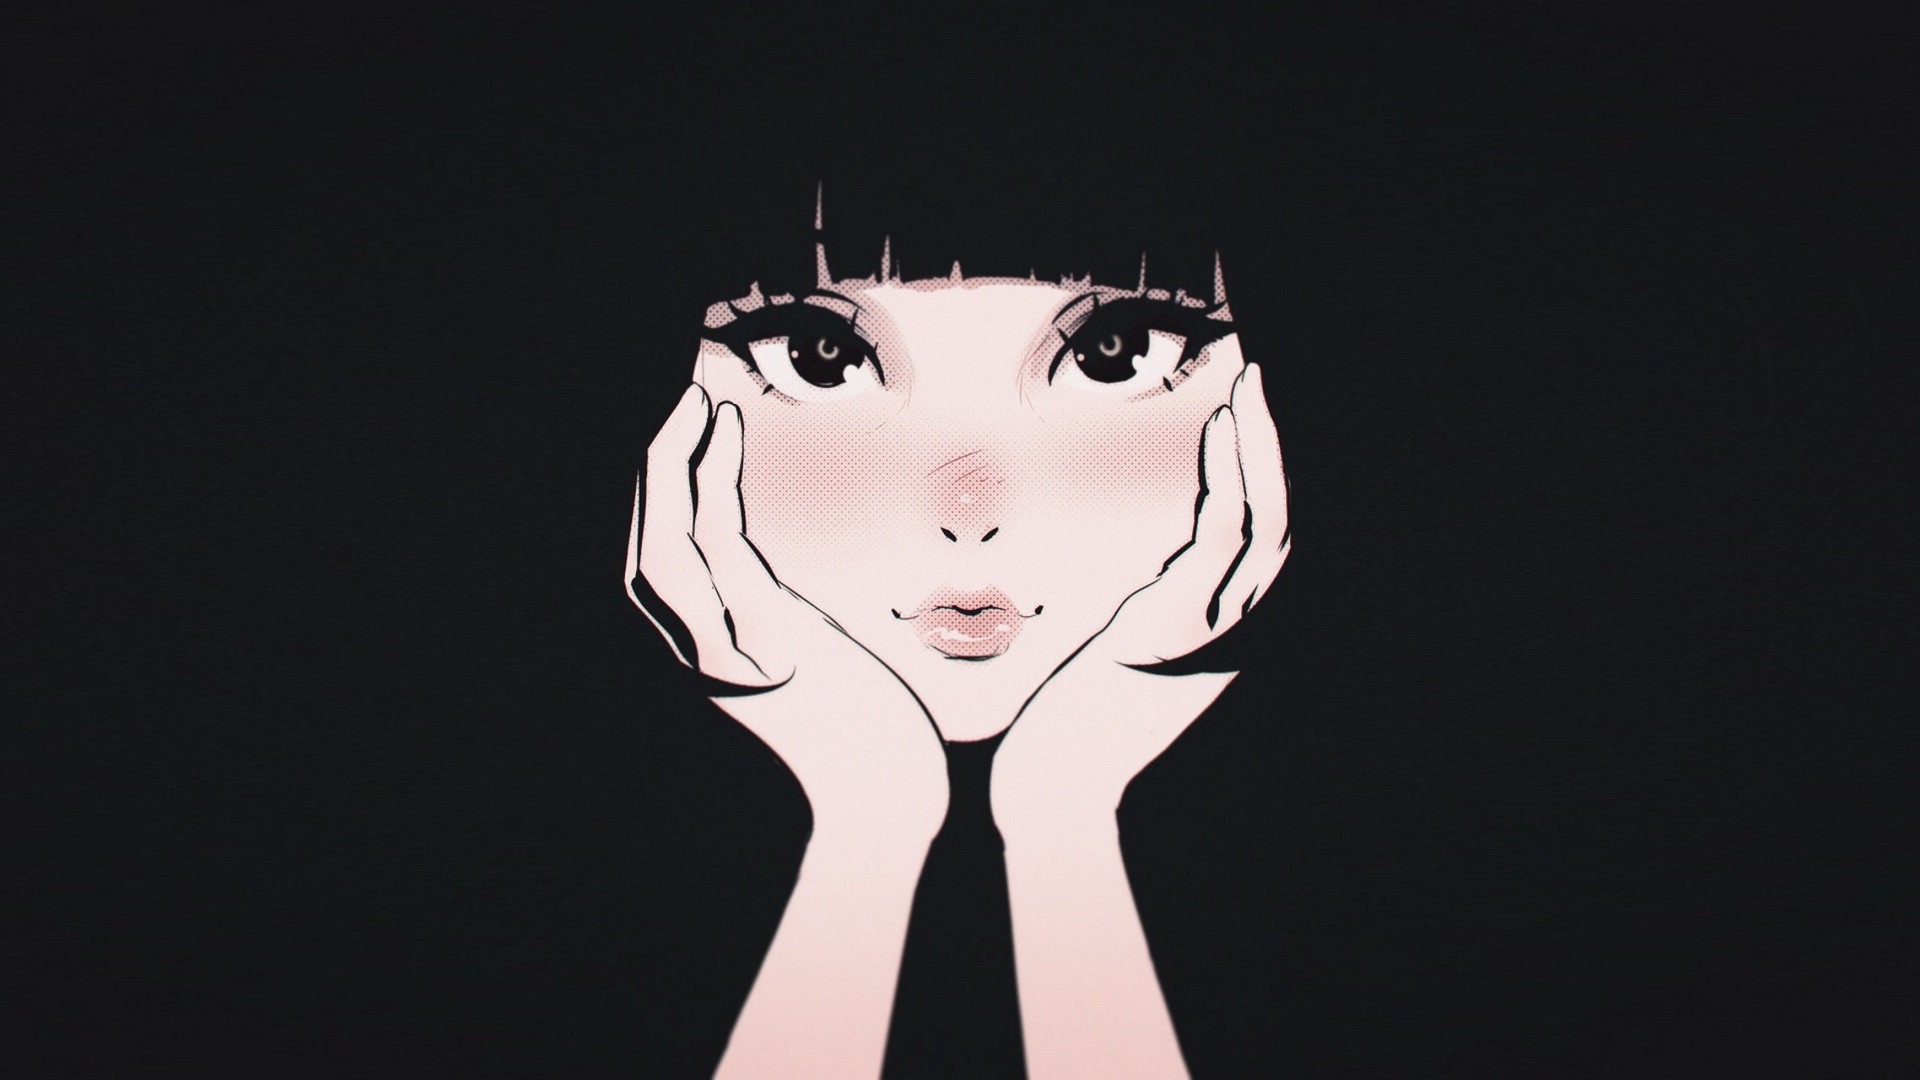 Wallpapers black hair cute wallpaper anime girl on the desktop